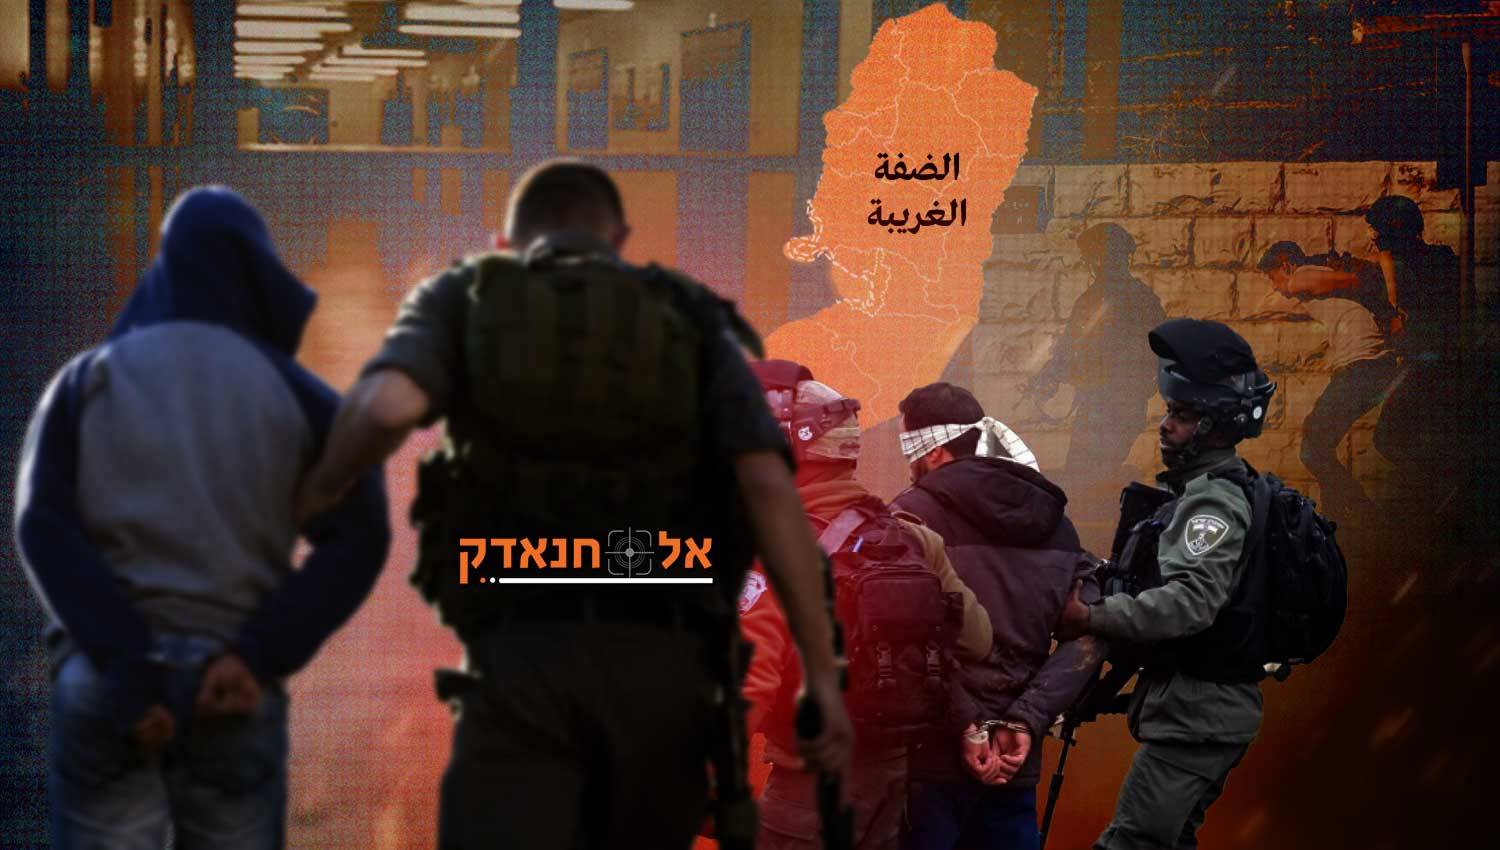 יותר מ-8875 עצורים: מה מתרחש בירושלים ובגדה?